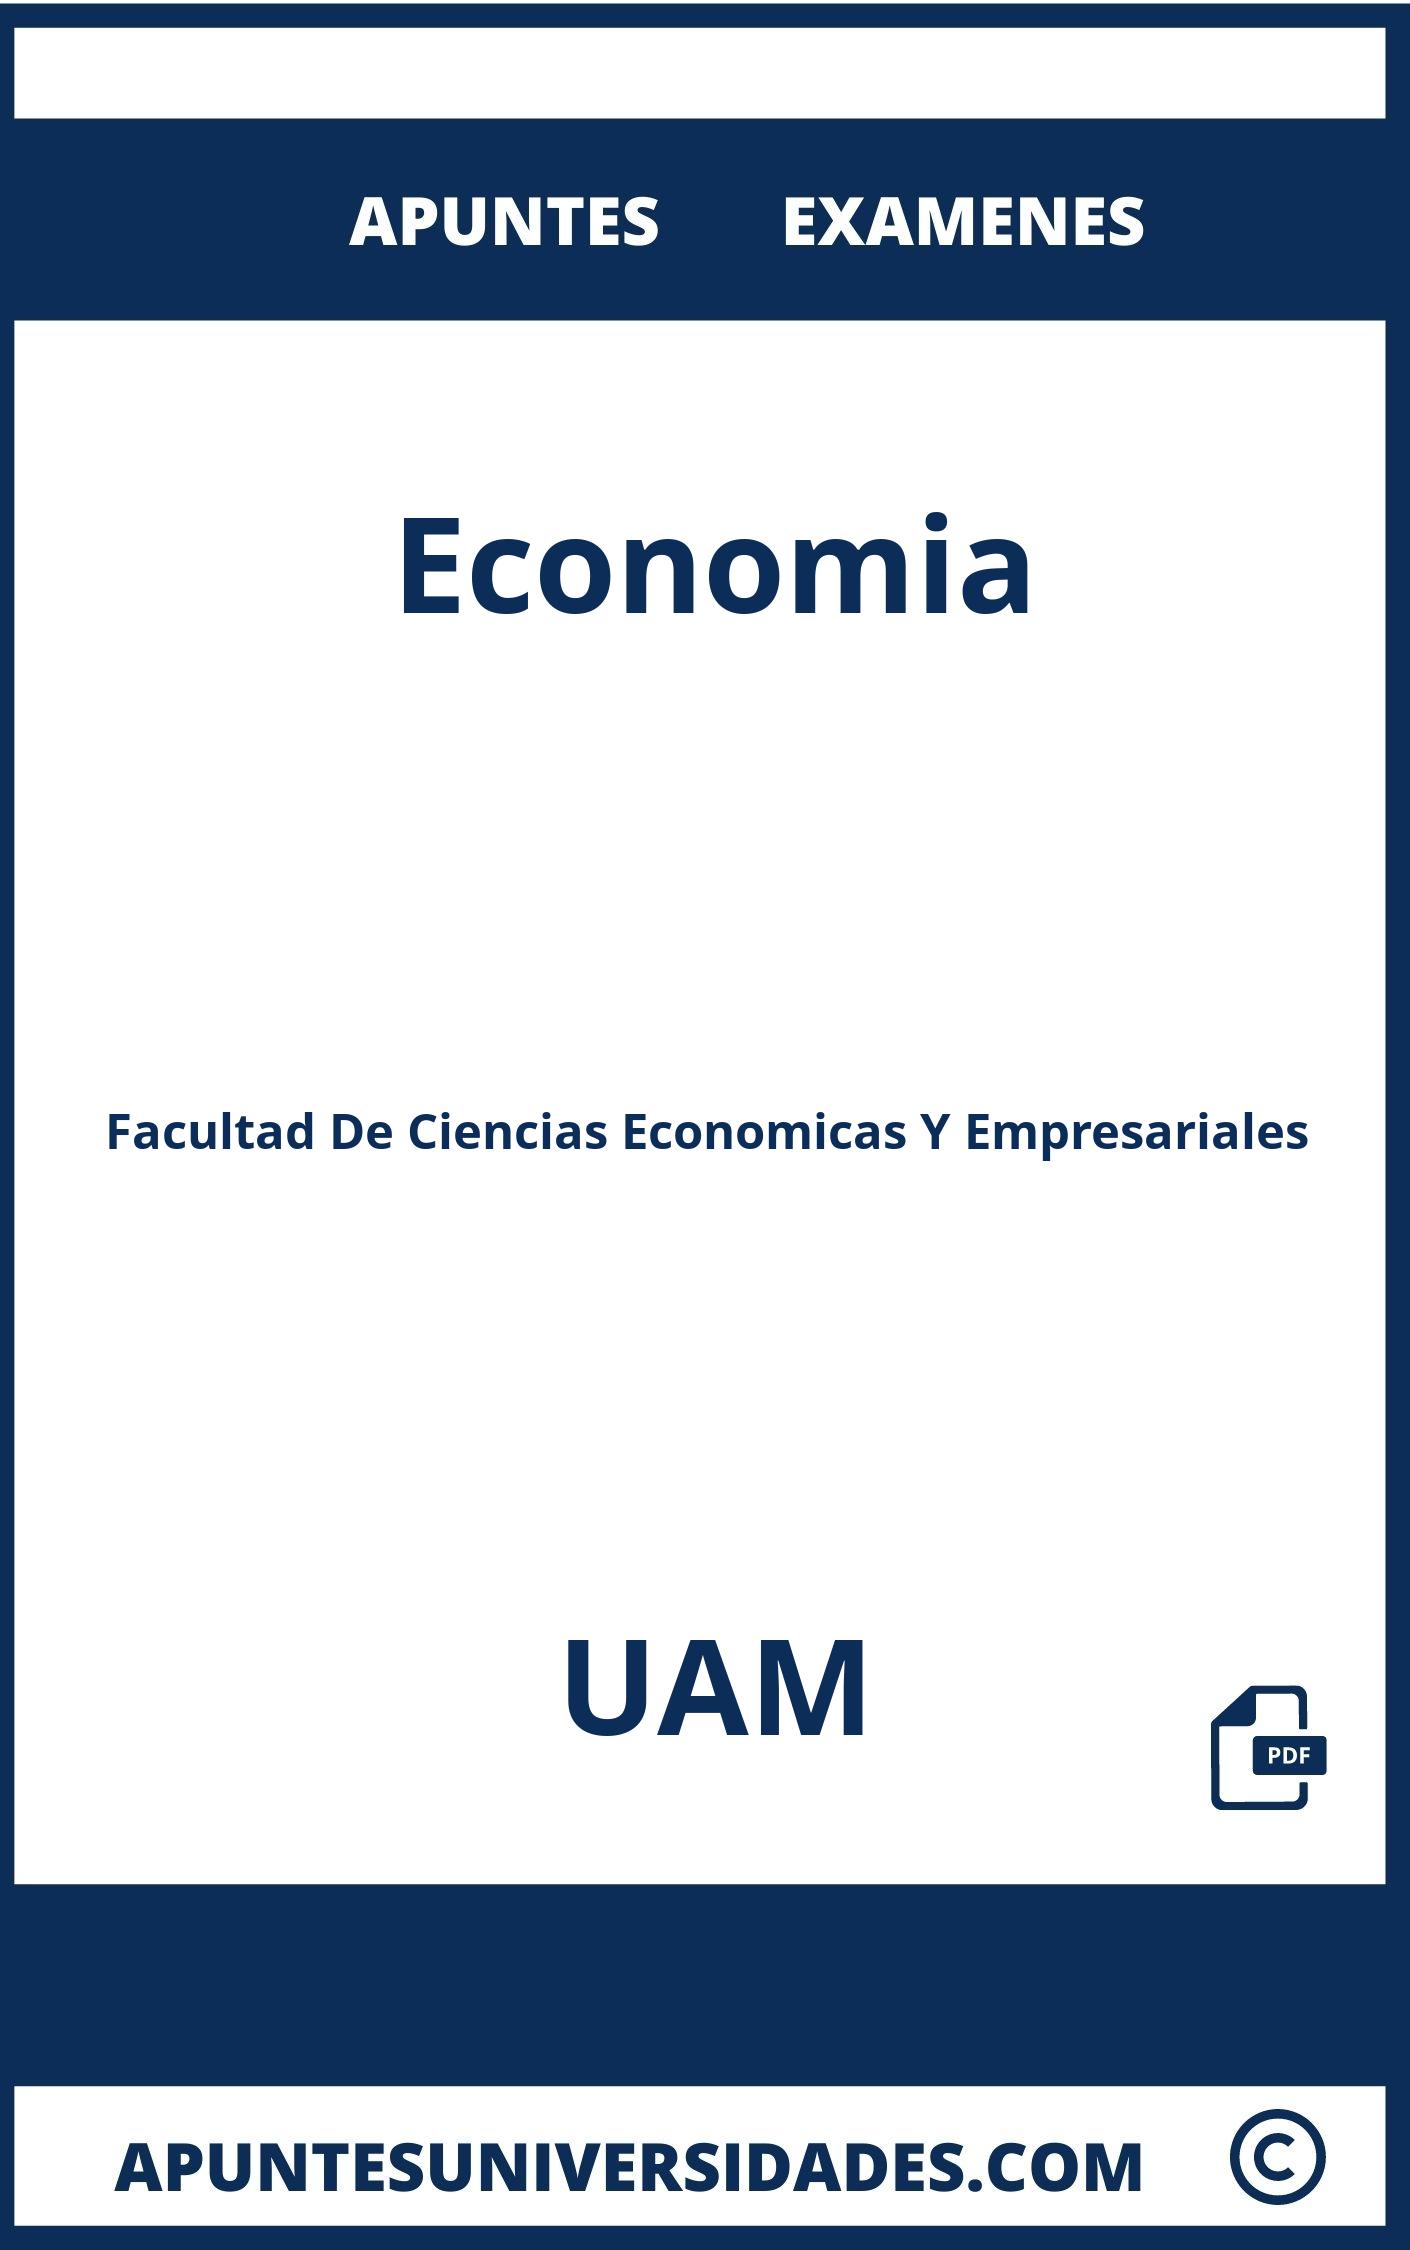 Apuntes y Examenes Economia UAM